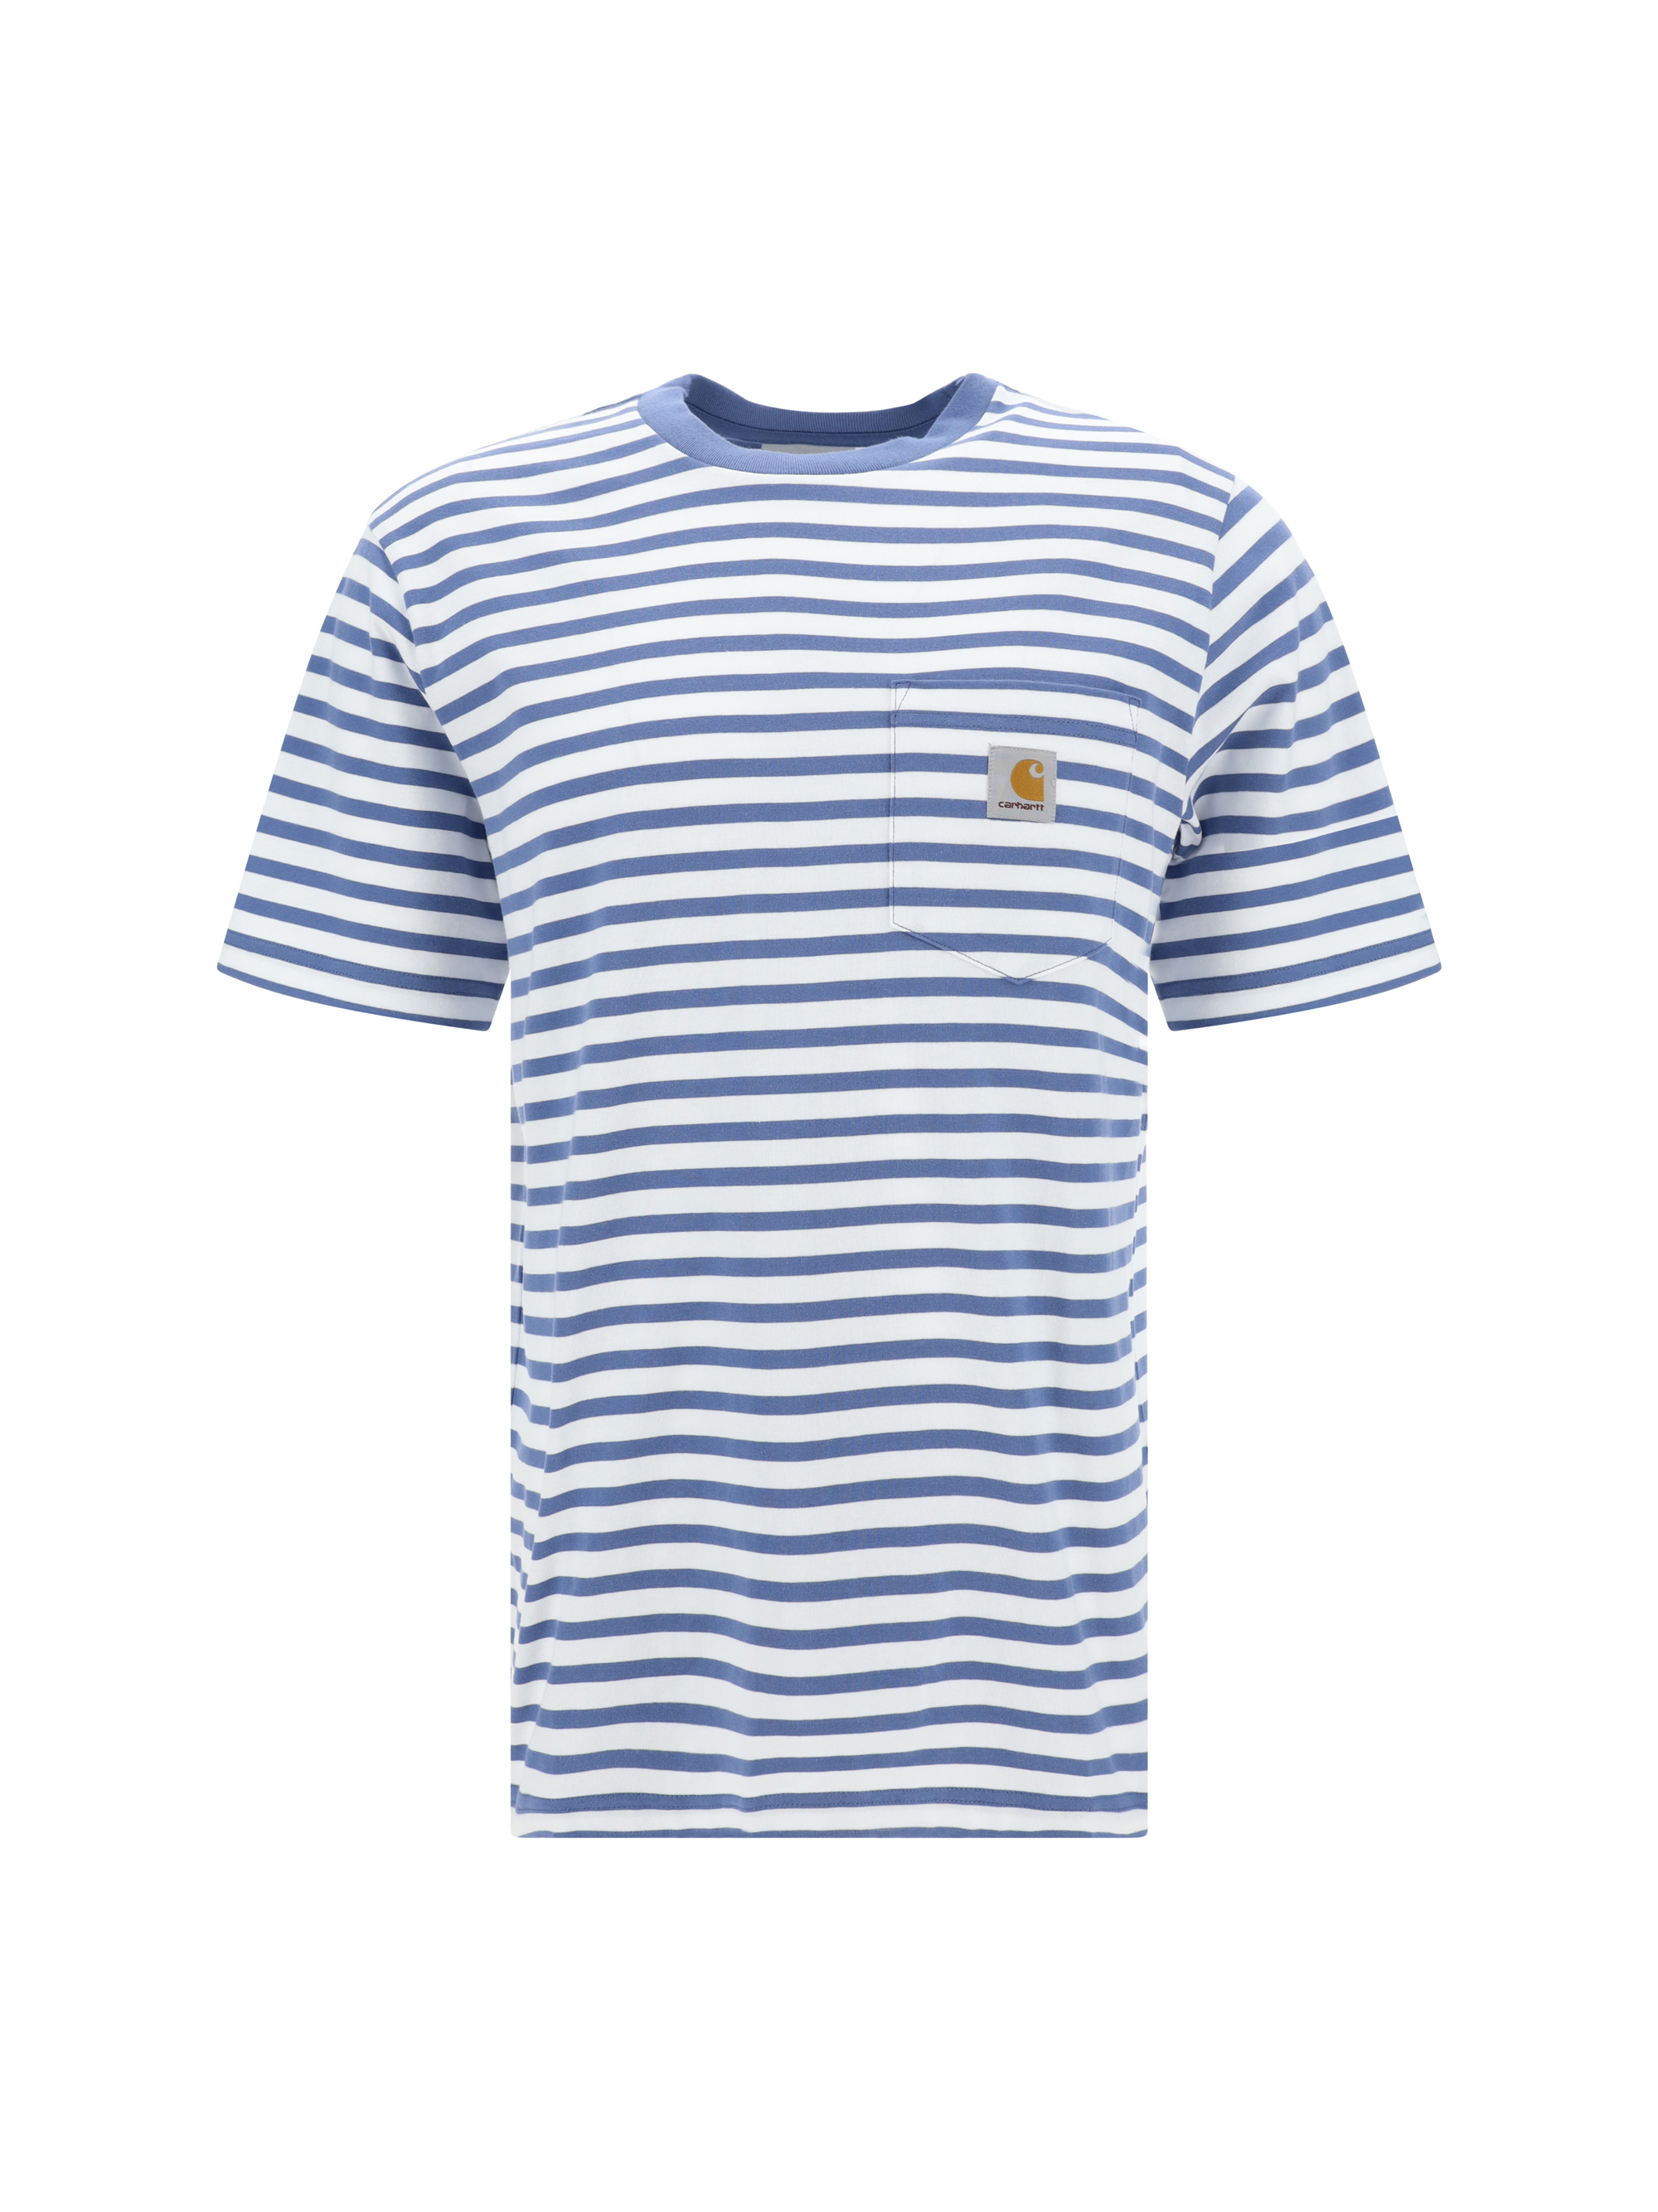 Carhartt T-shirt In Seidler Stripe, Sorrent / White